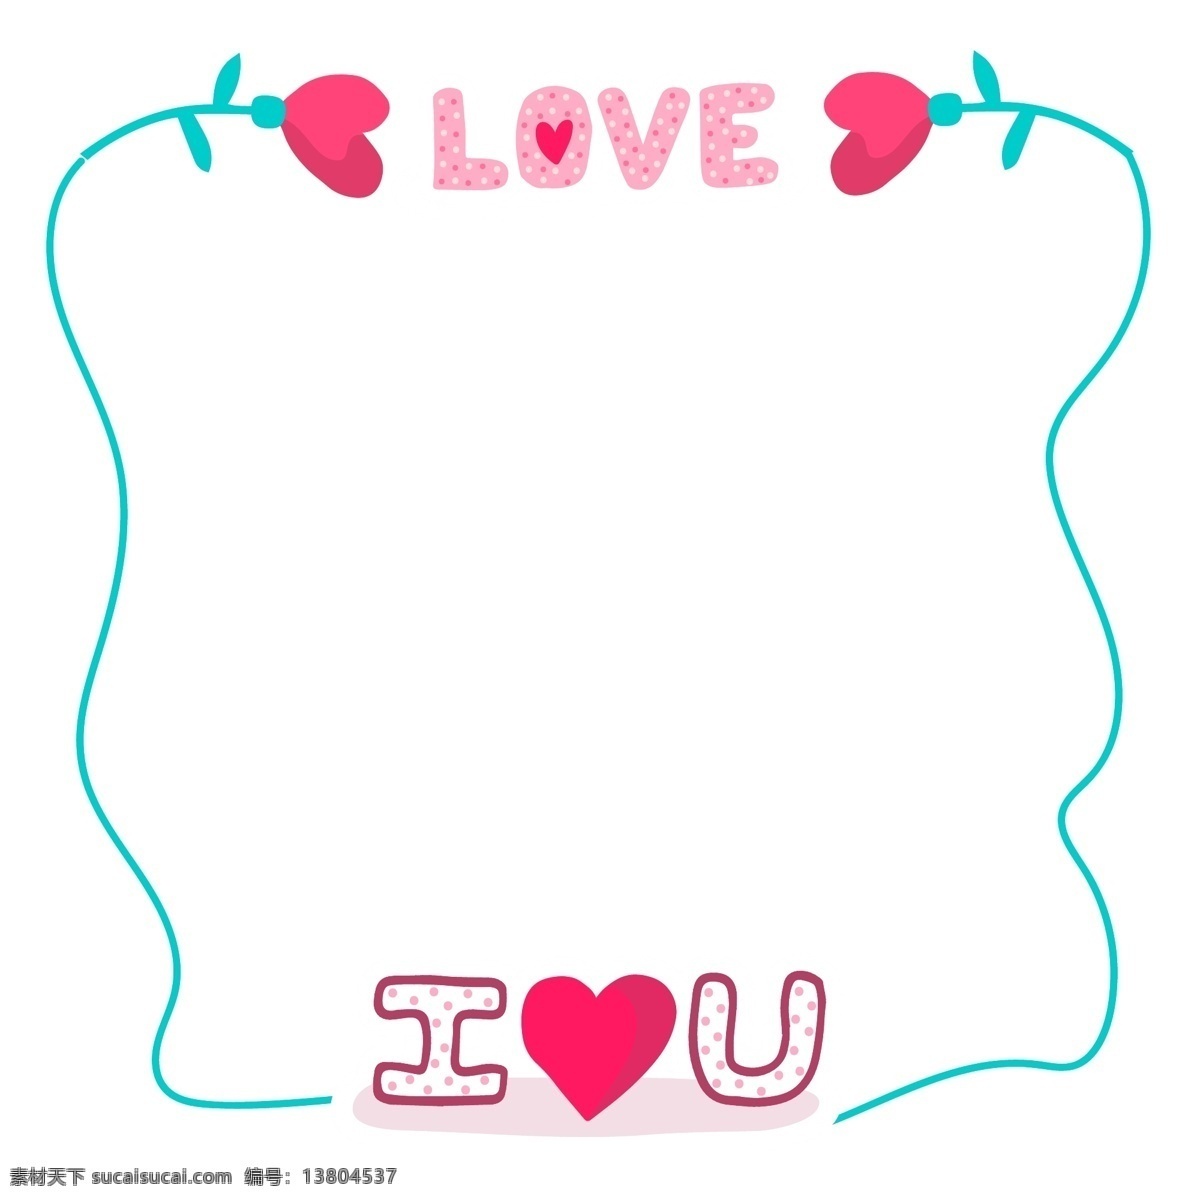 蓝色 爱情 边框 插画 漂亮 手绘爱情边框 卡通爱情边框 可爱 爱情边框装饰